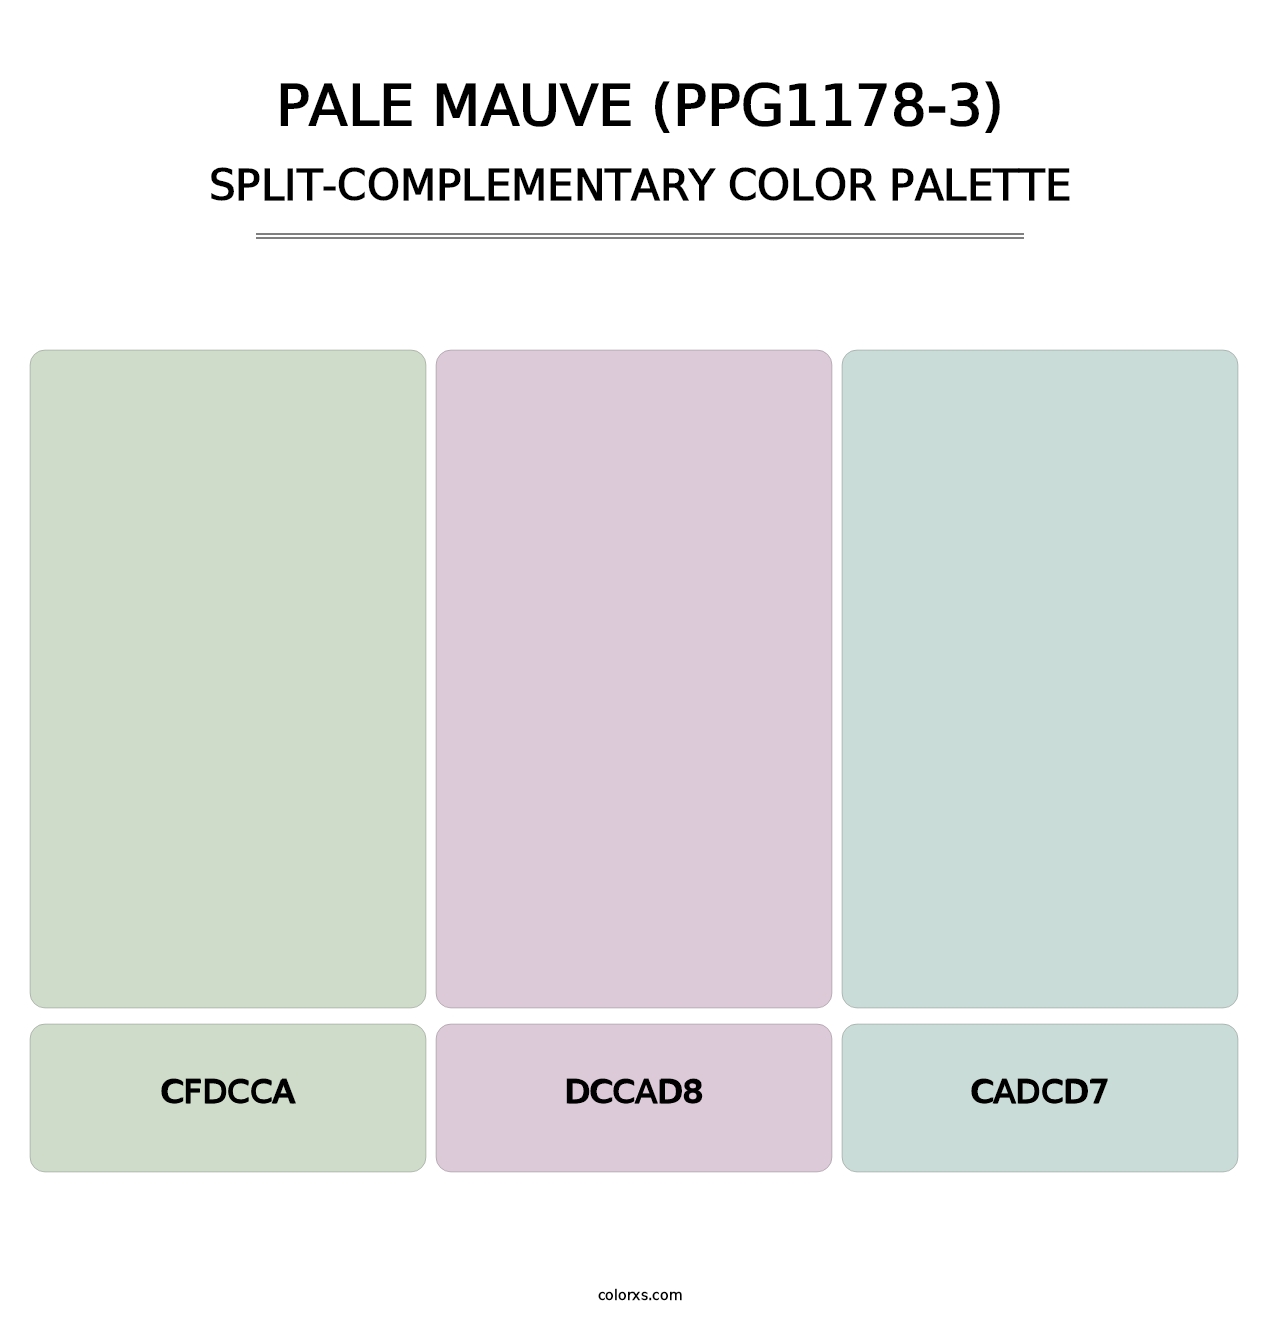 Pale Mauve (PPG1178-3) - Split-Complementary Color Palette